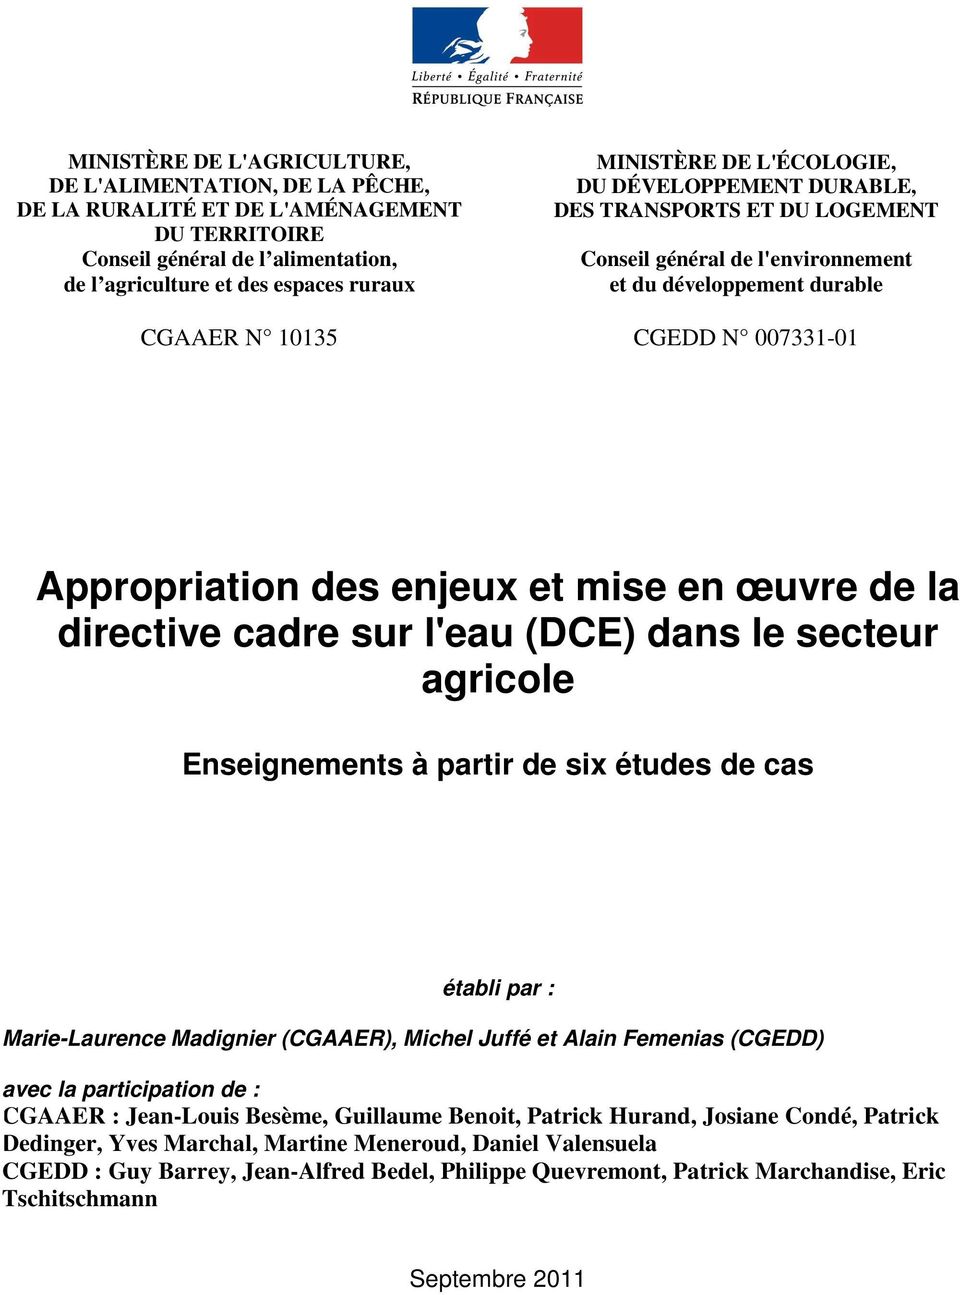 œuvre de la directive cadre sur l'eau (DCE) dans le secteur agricole Enseignements à partir de six études de cas établi par : Marie-Laurence Madignier (CGAAER), Michel Juffé et Alain Femenias (CGEDD)